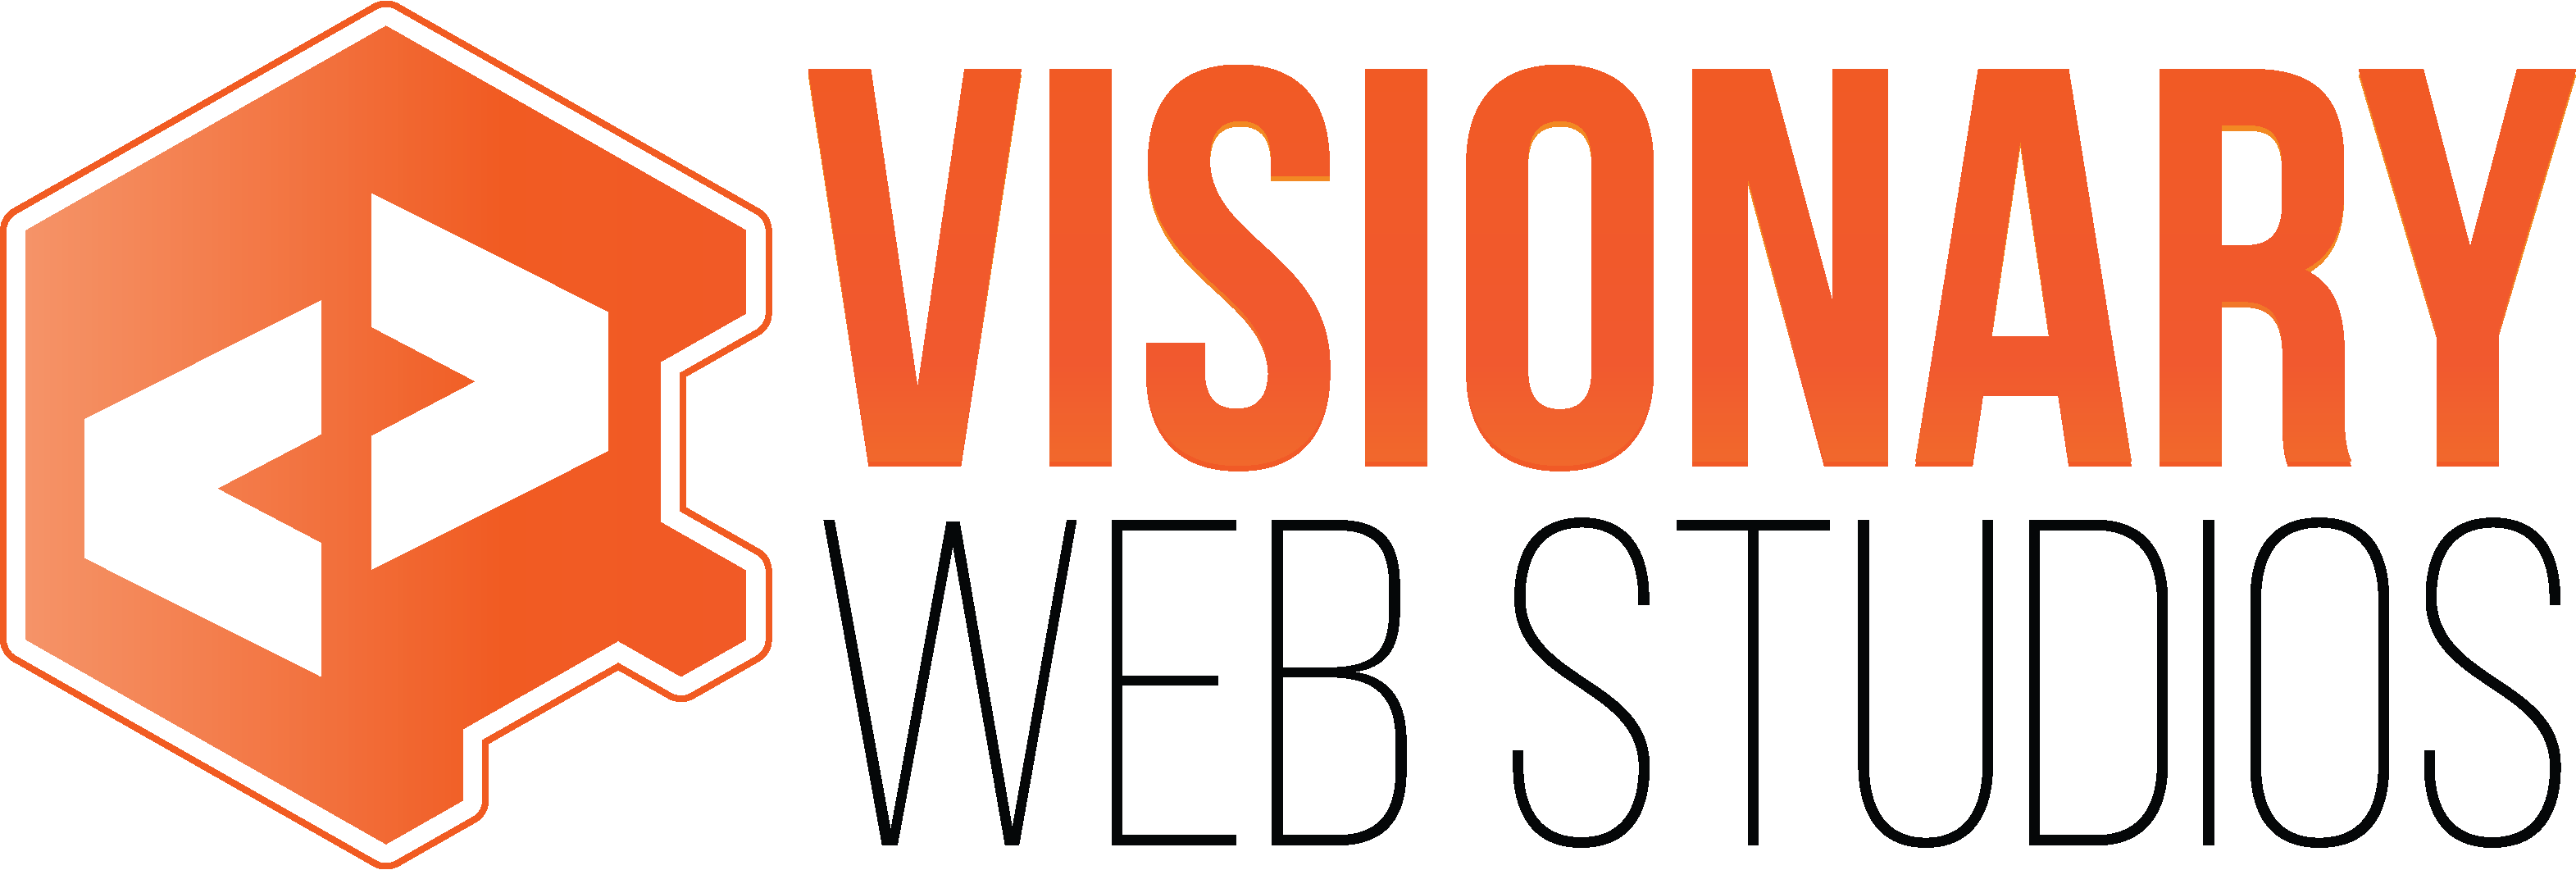 Web Design Services in USA